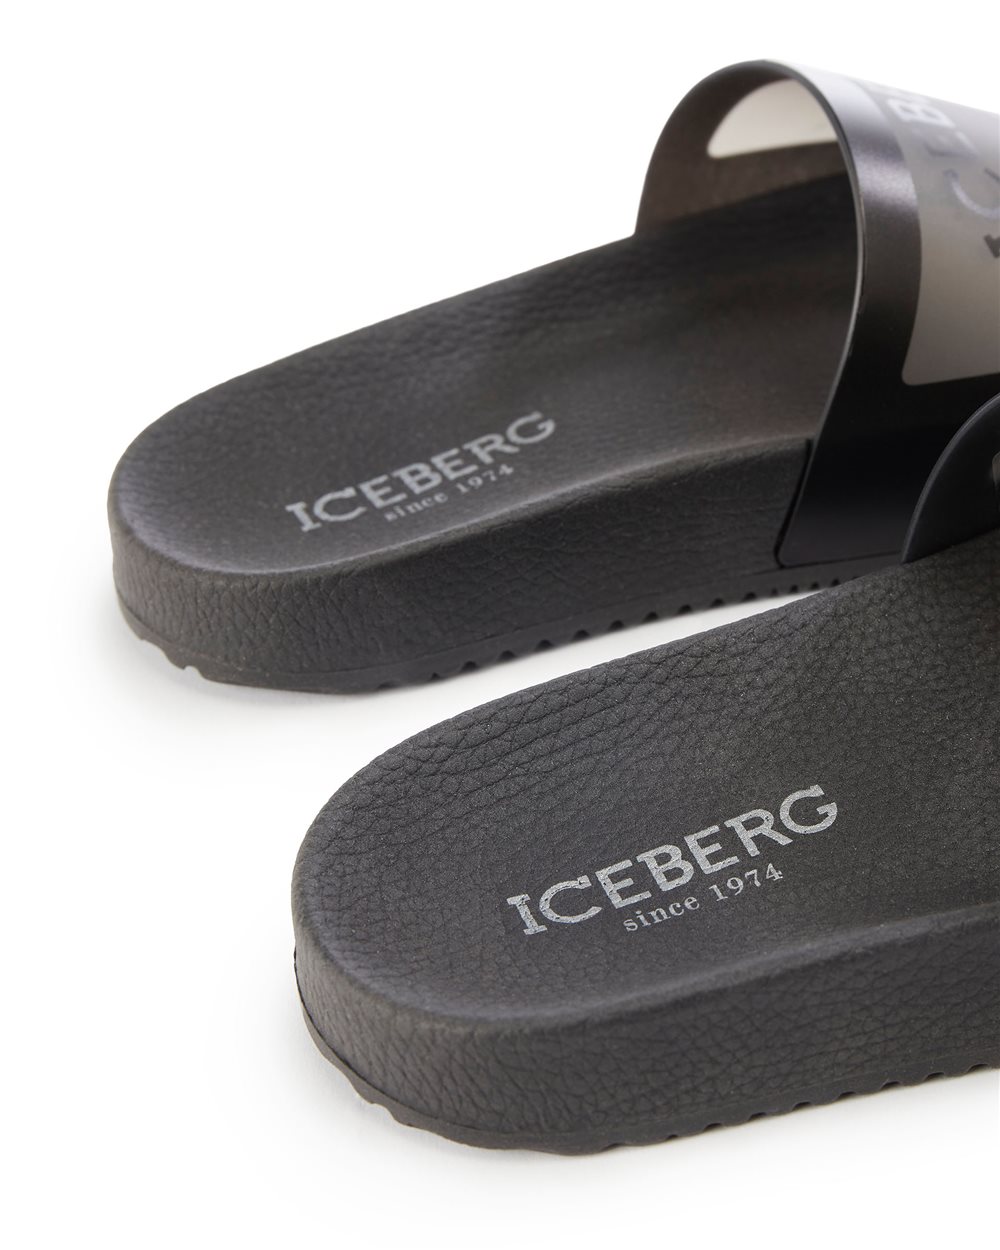 Slider sandal with logo - Iceberg - Official Website